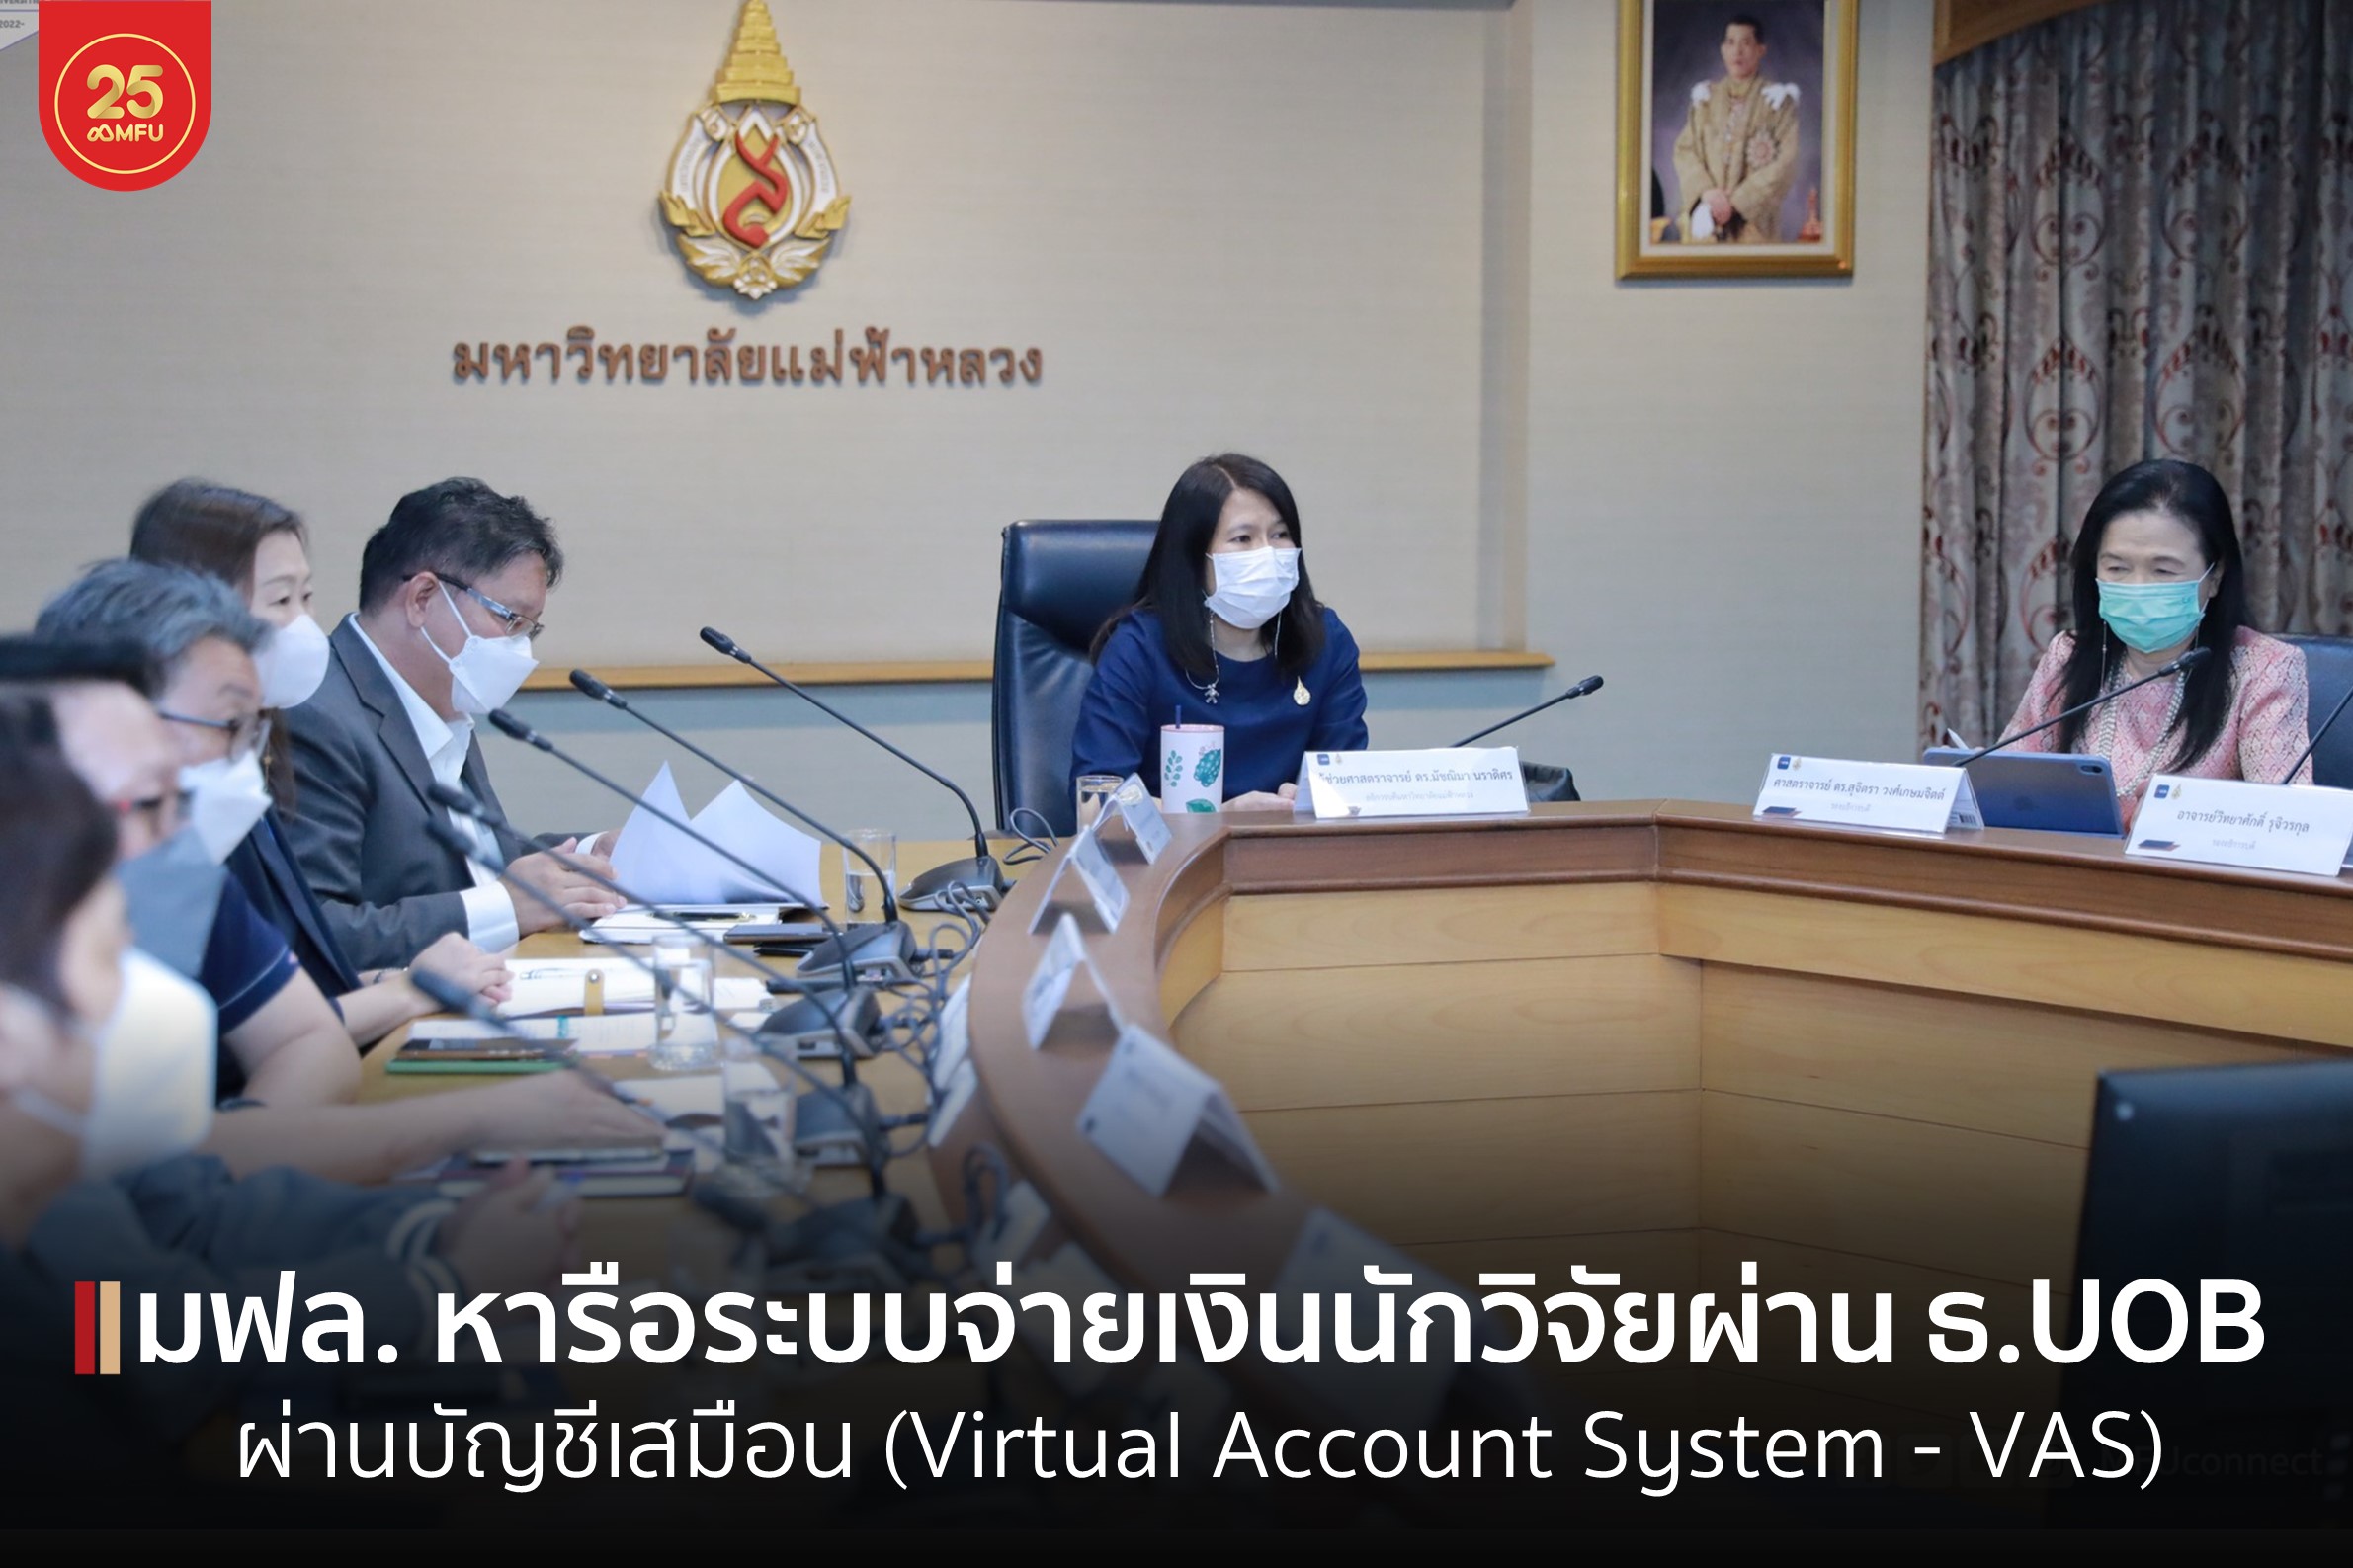 มฟล. หารือระบบจ่ายเงินนักวิจัยผ่านธนาคาร UOB ด้วยระบบบัญชีเสมือน (Virtual Account System - VAS)